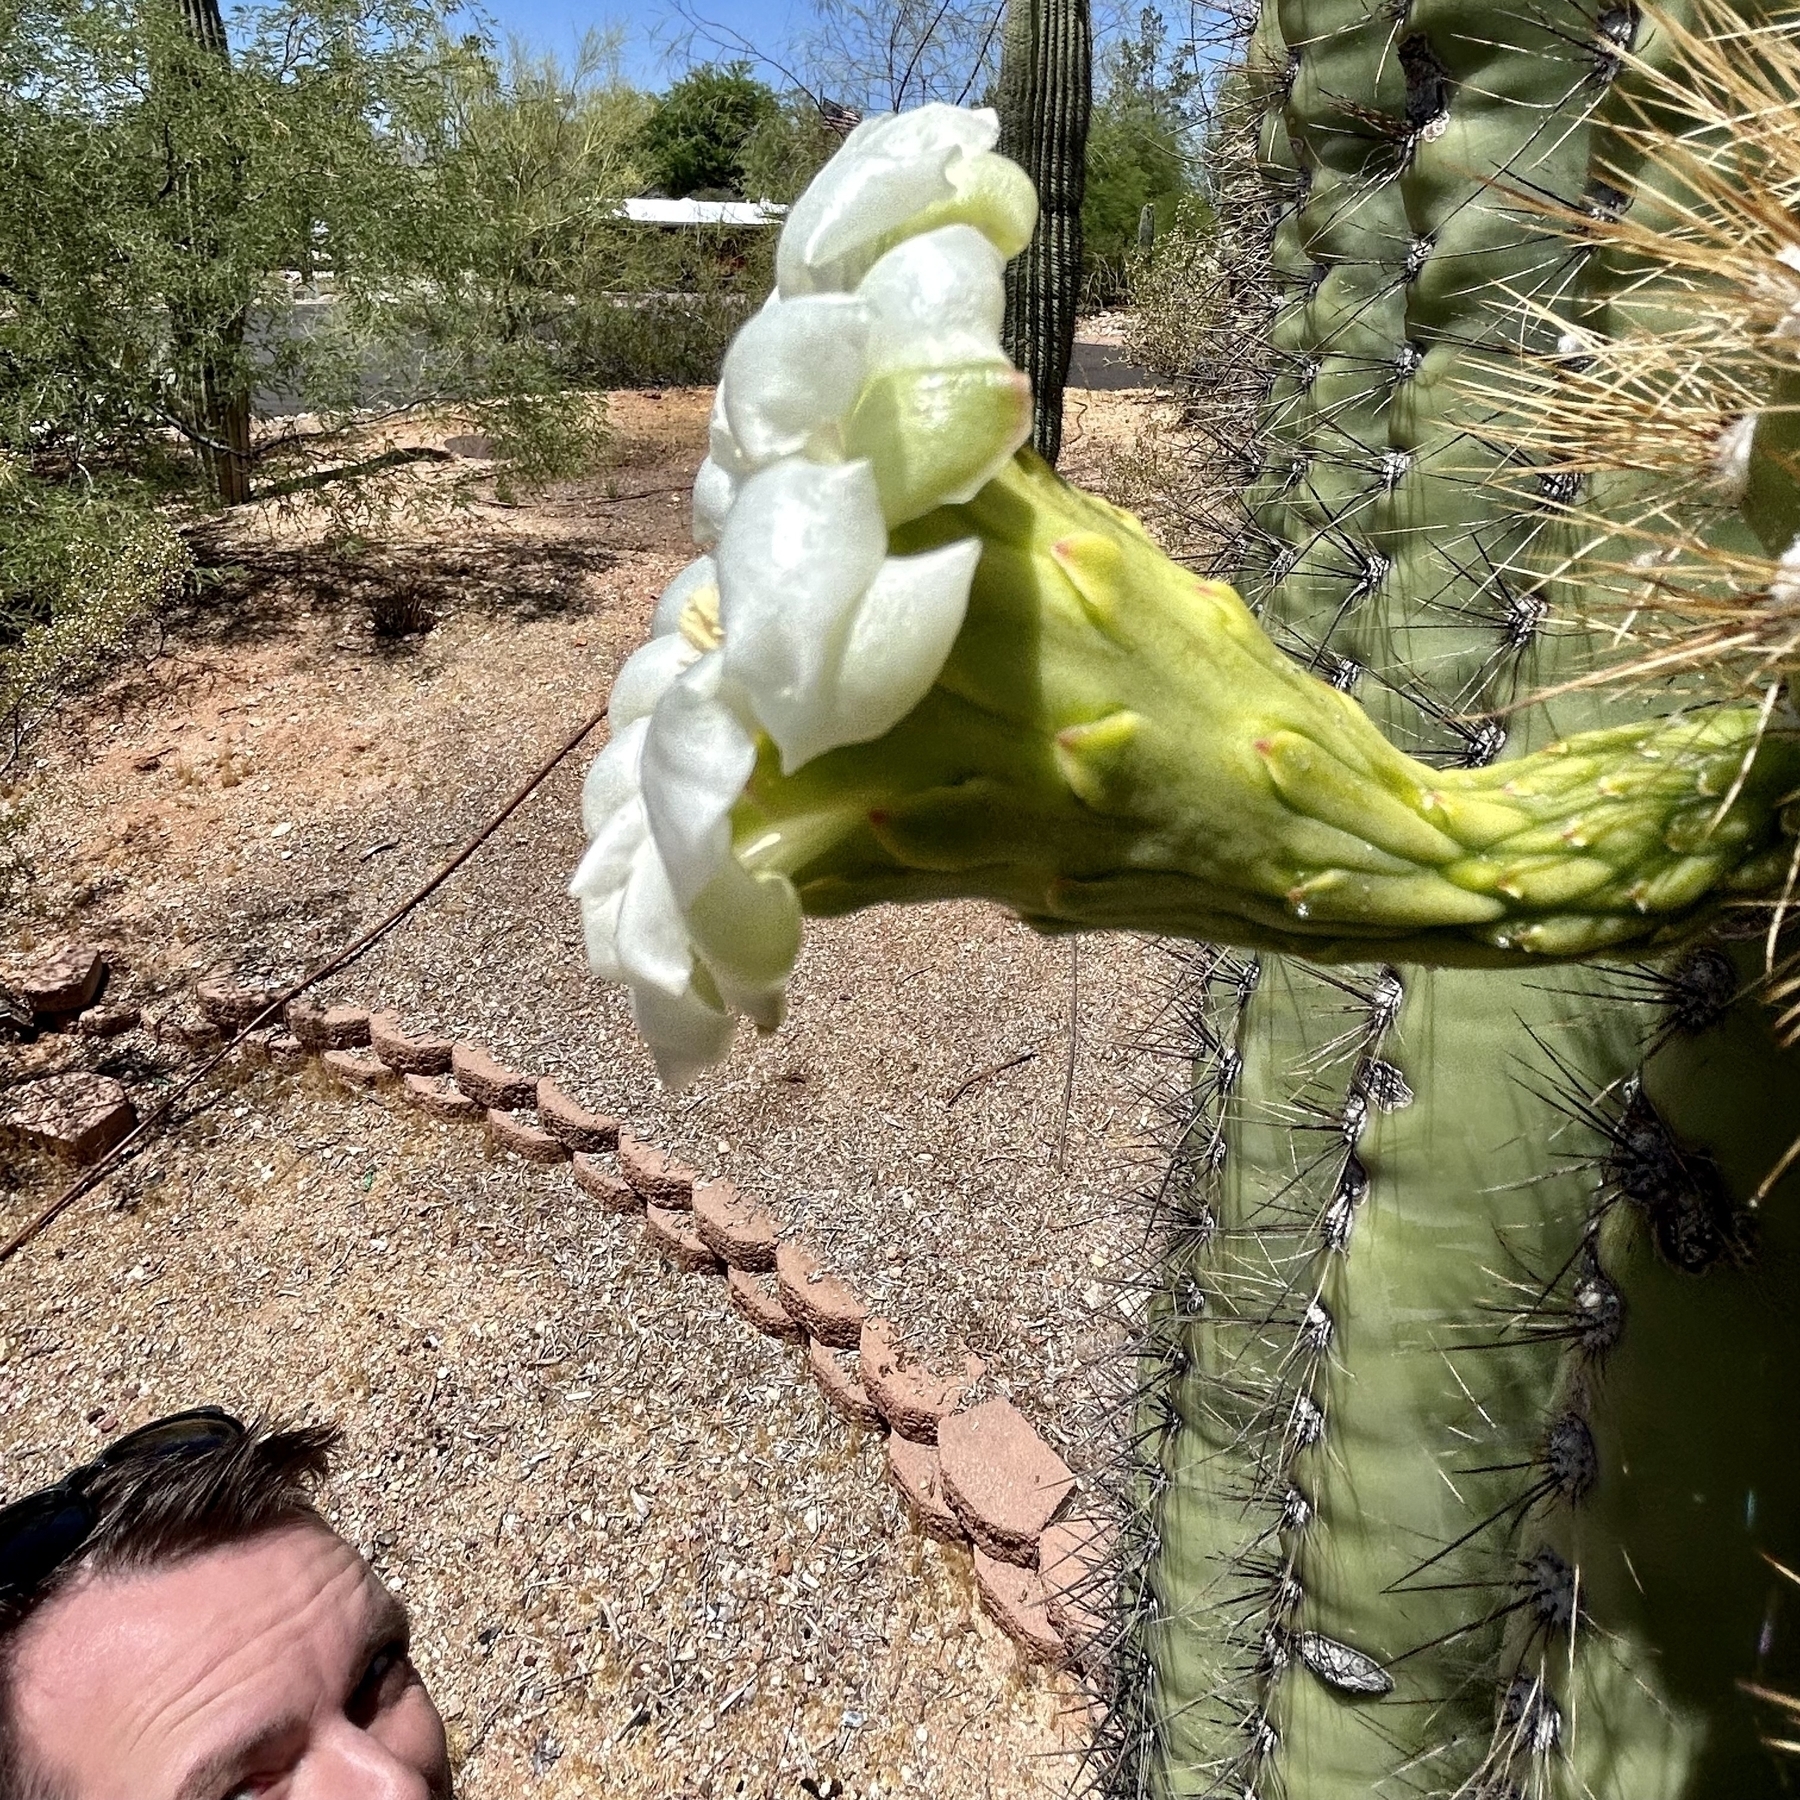 Me looking at a saguaro bloom